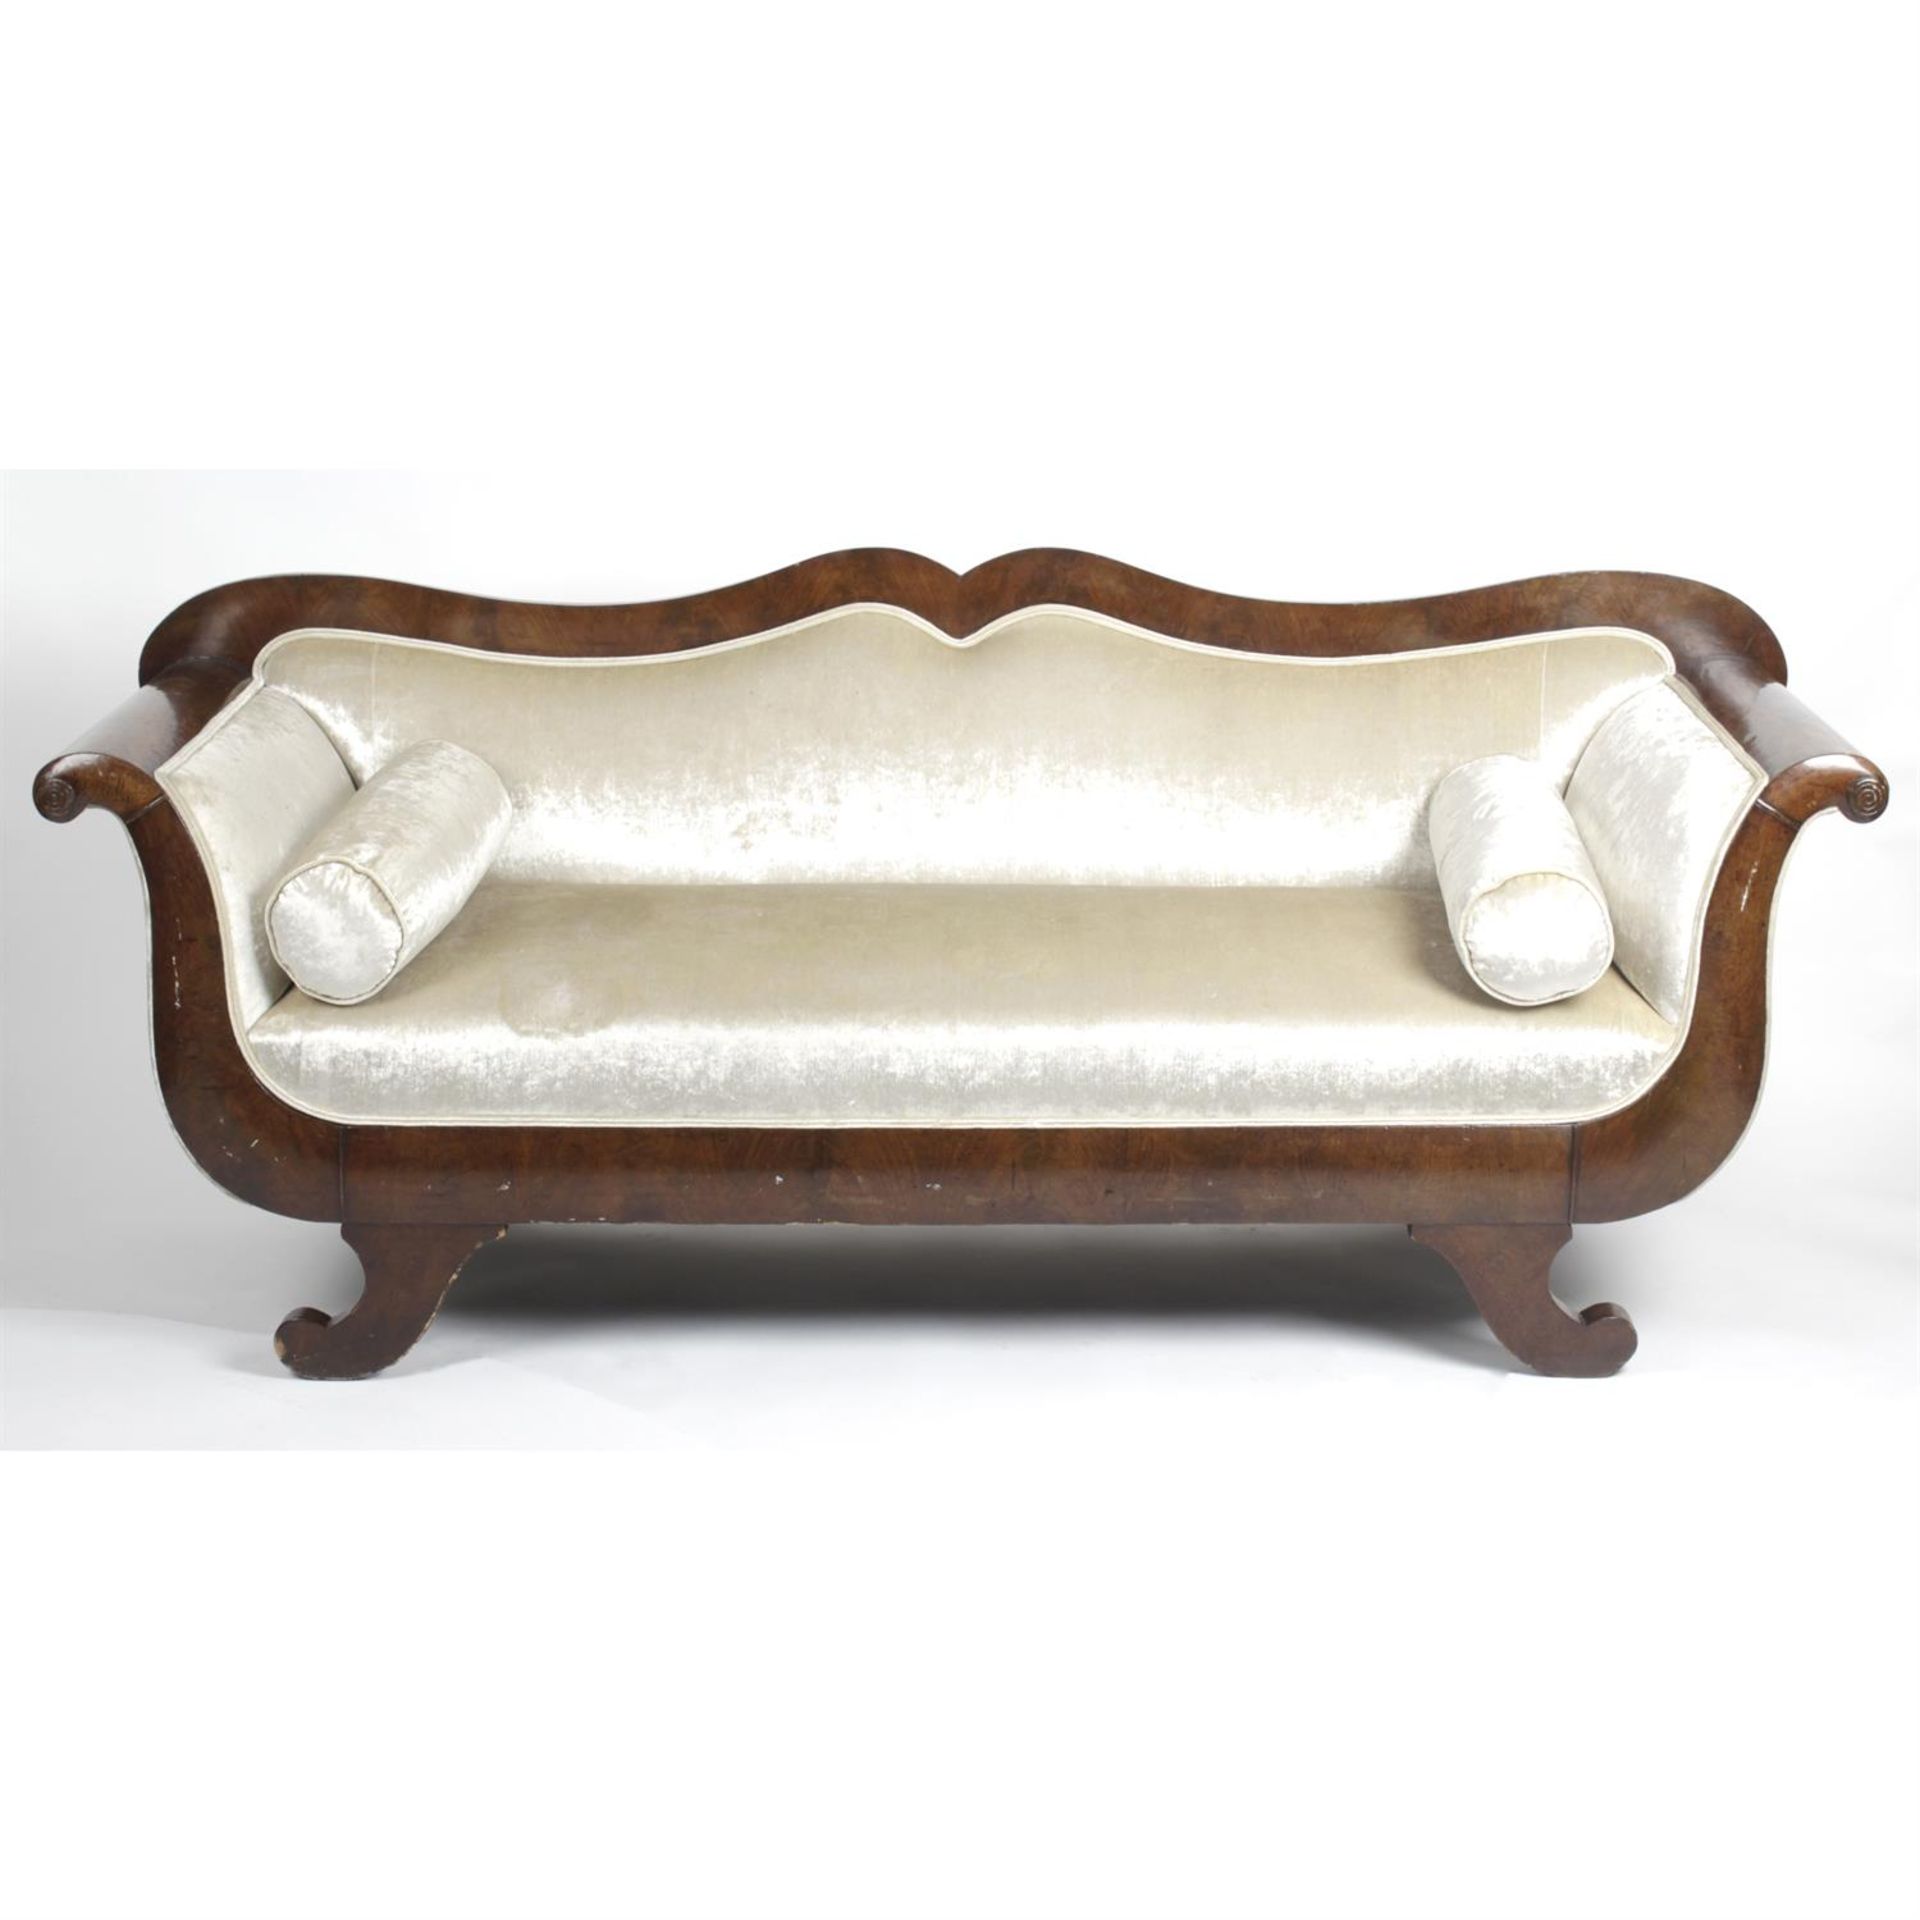 A 19th century Empire-style mahogany framed double scroll arm sofa.